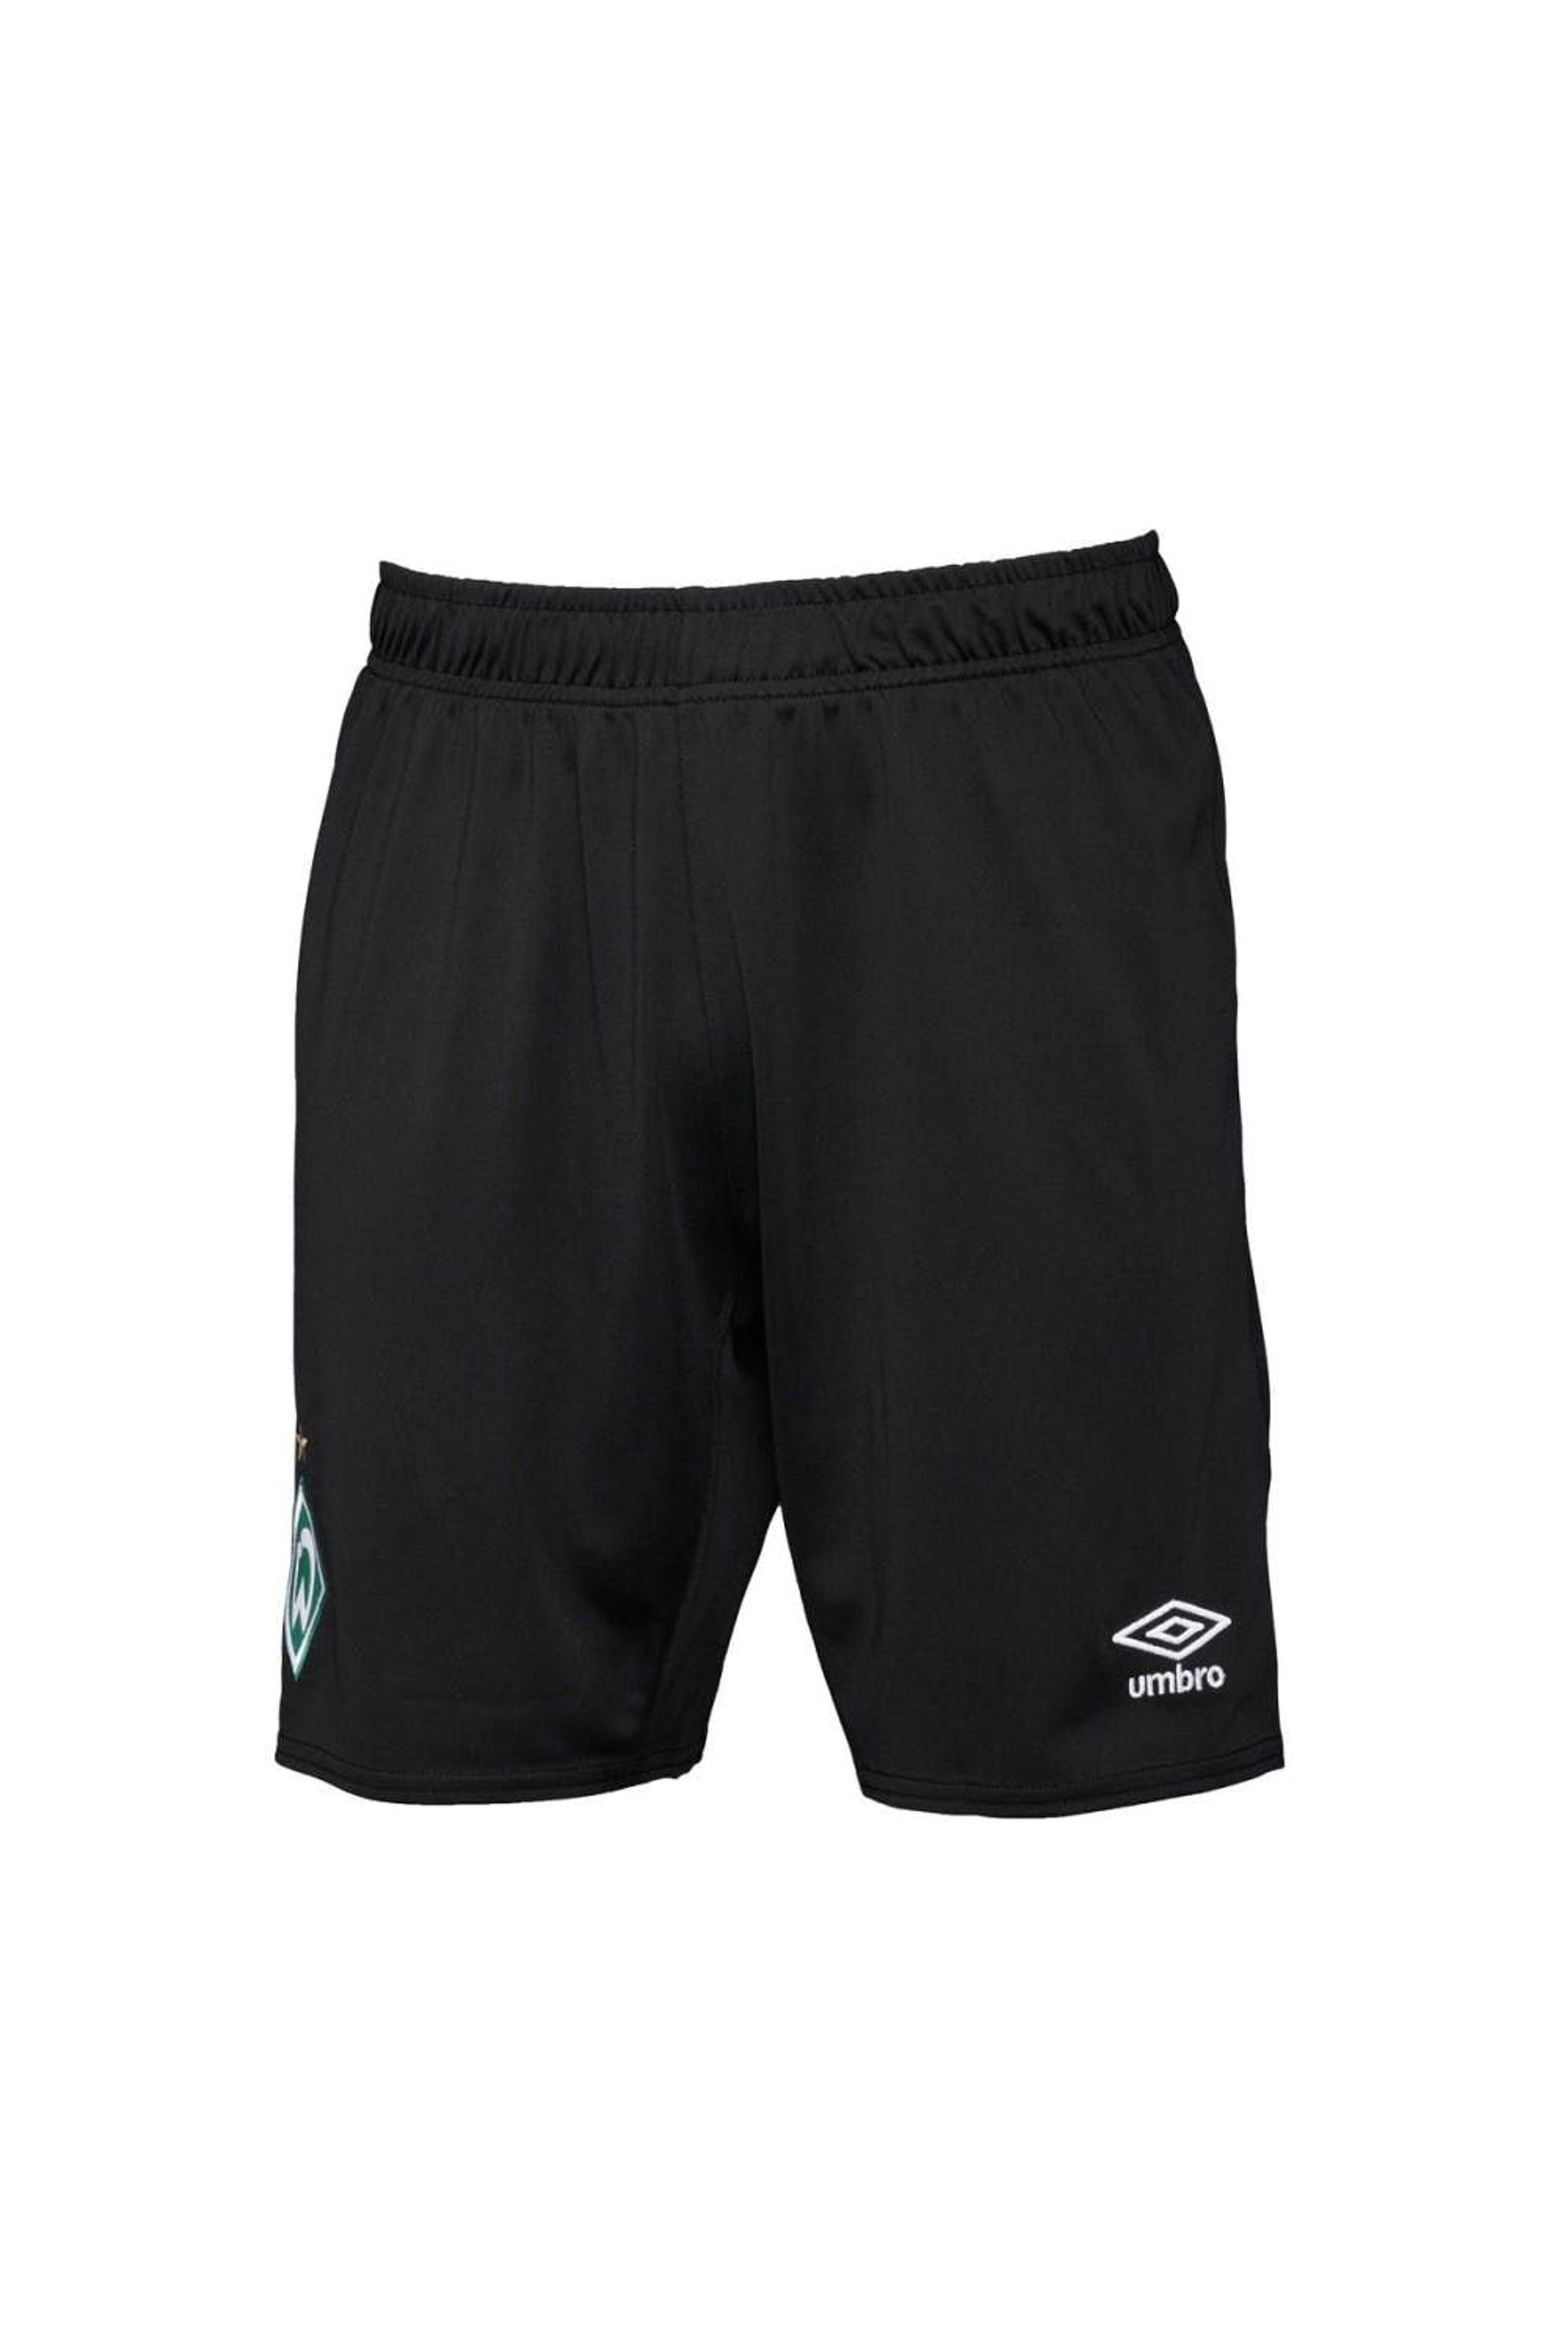 Umbro Adult 22/23 Sv Werder Bremen Third Shorts in Black | Lyst